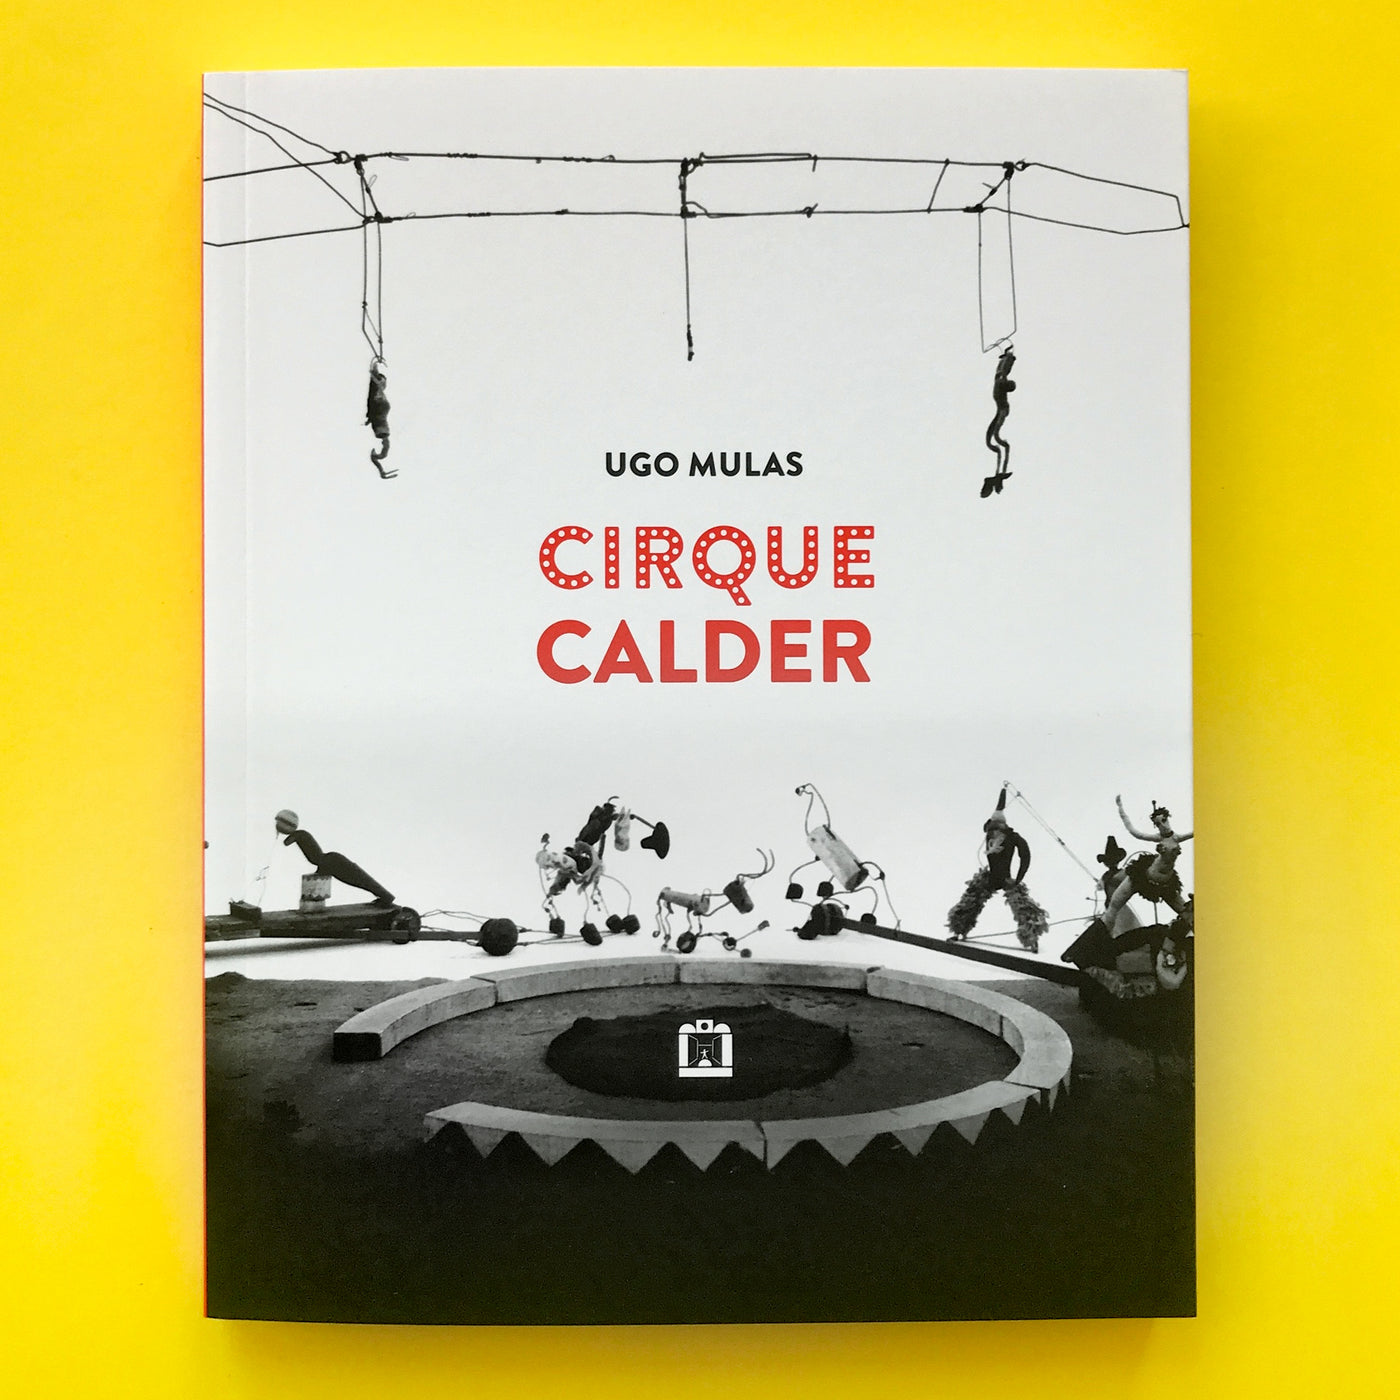 Cirque Calder by Ugo Mulas